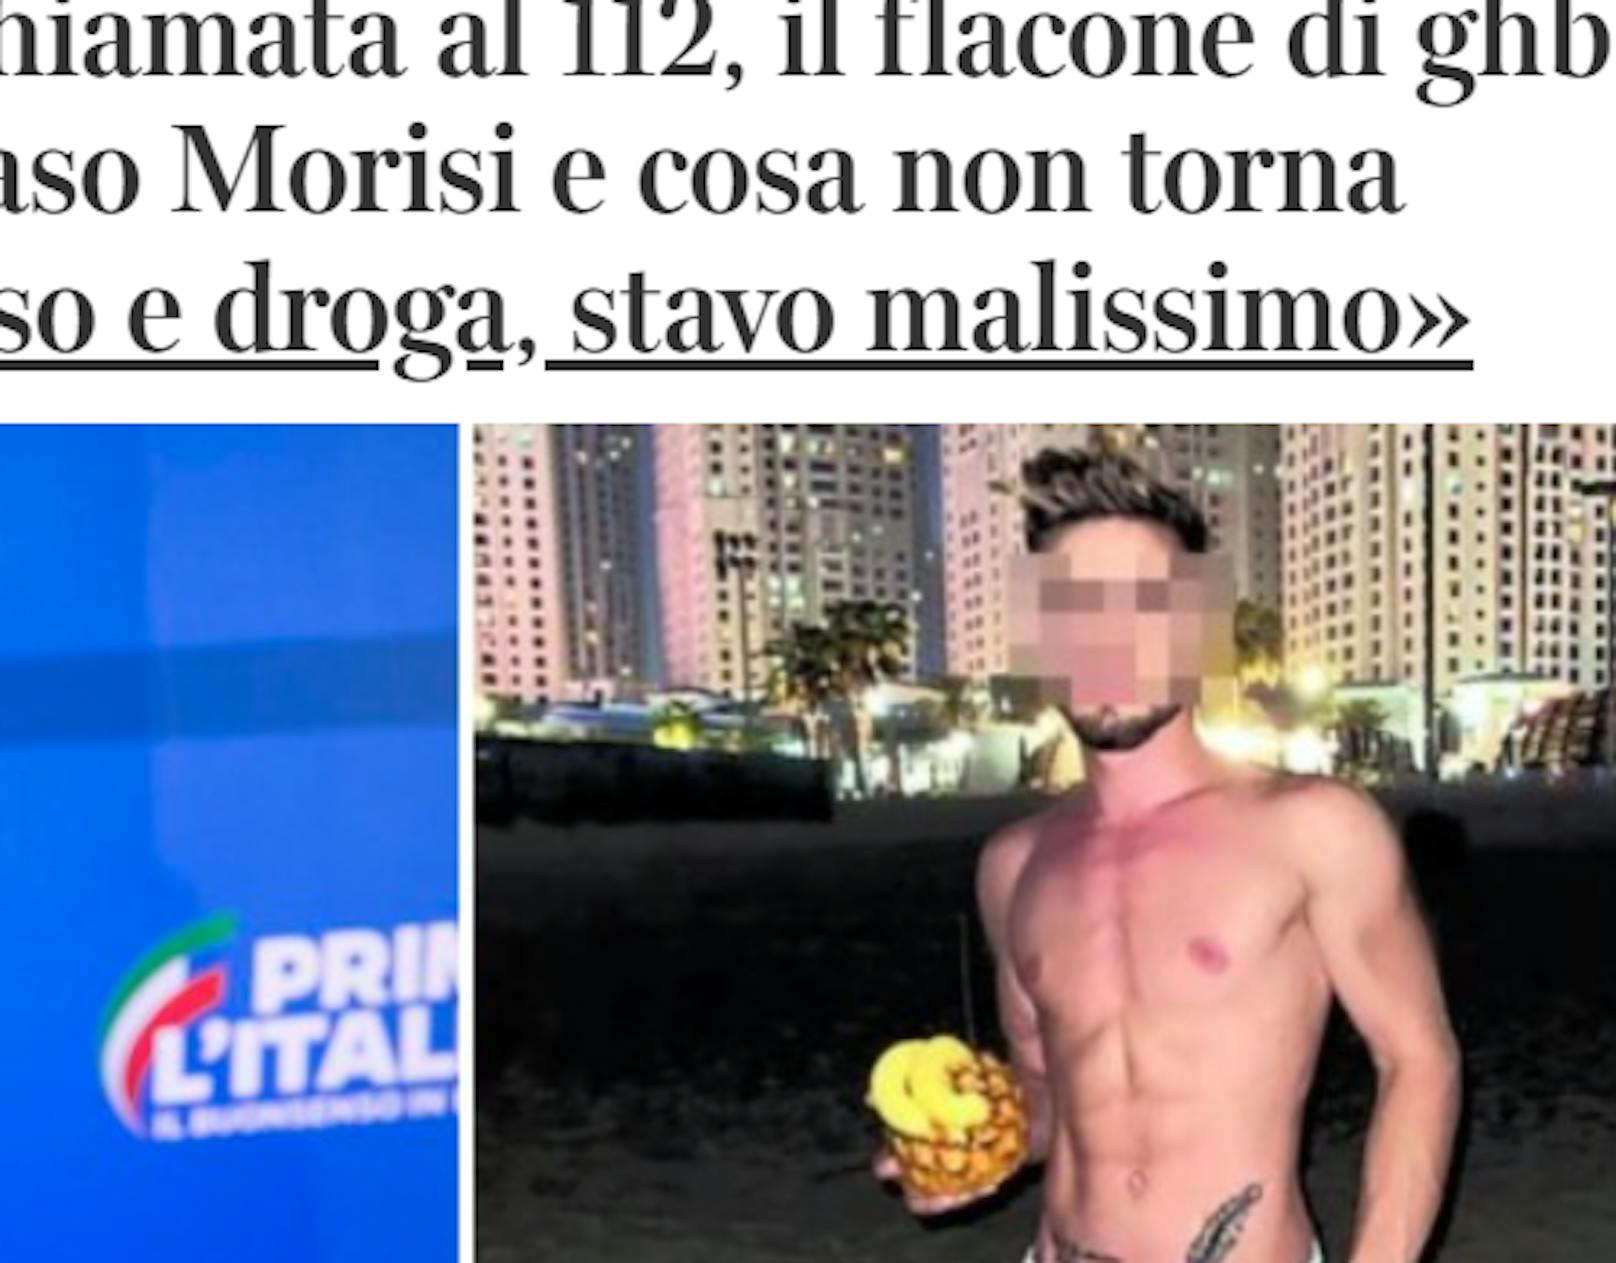 Ende September 2021 wird klar, warum: Italienische Medien deckten auf, dass Morisi wohl in einer Sexorgie mit zwei rumänischen Männern verwickelt war.